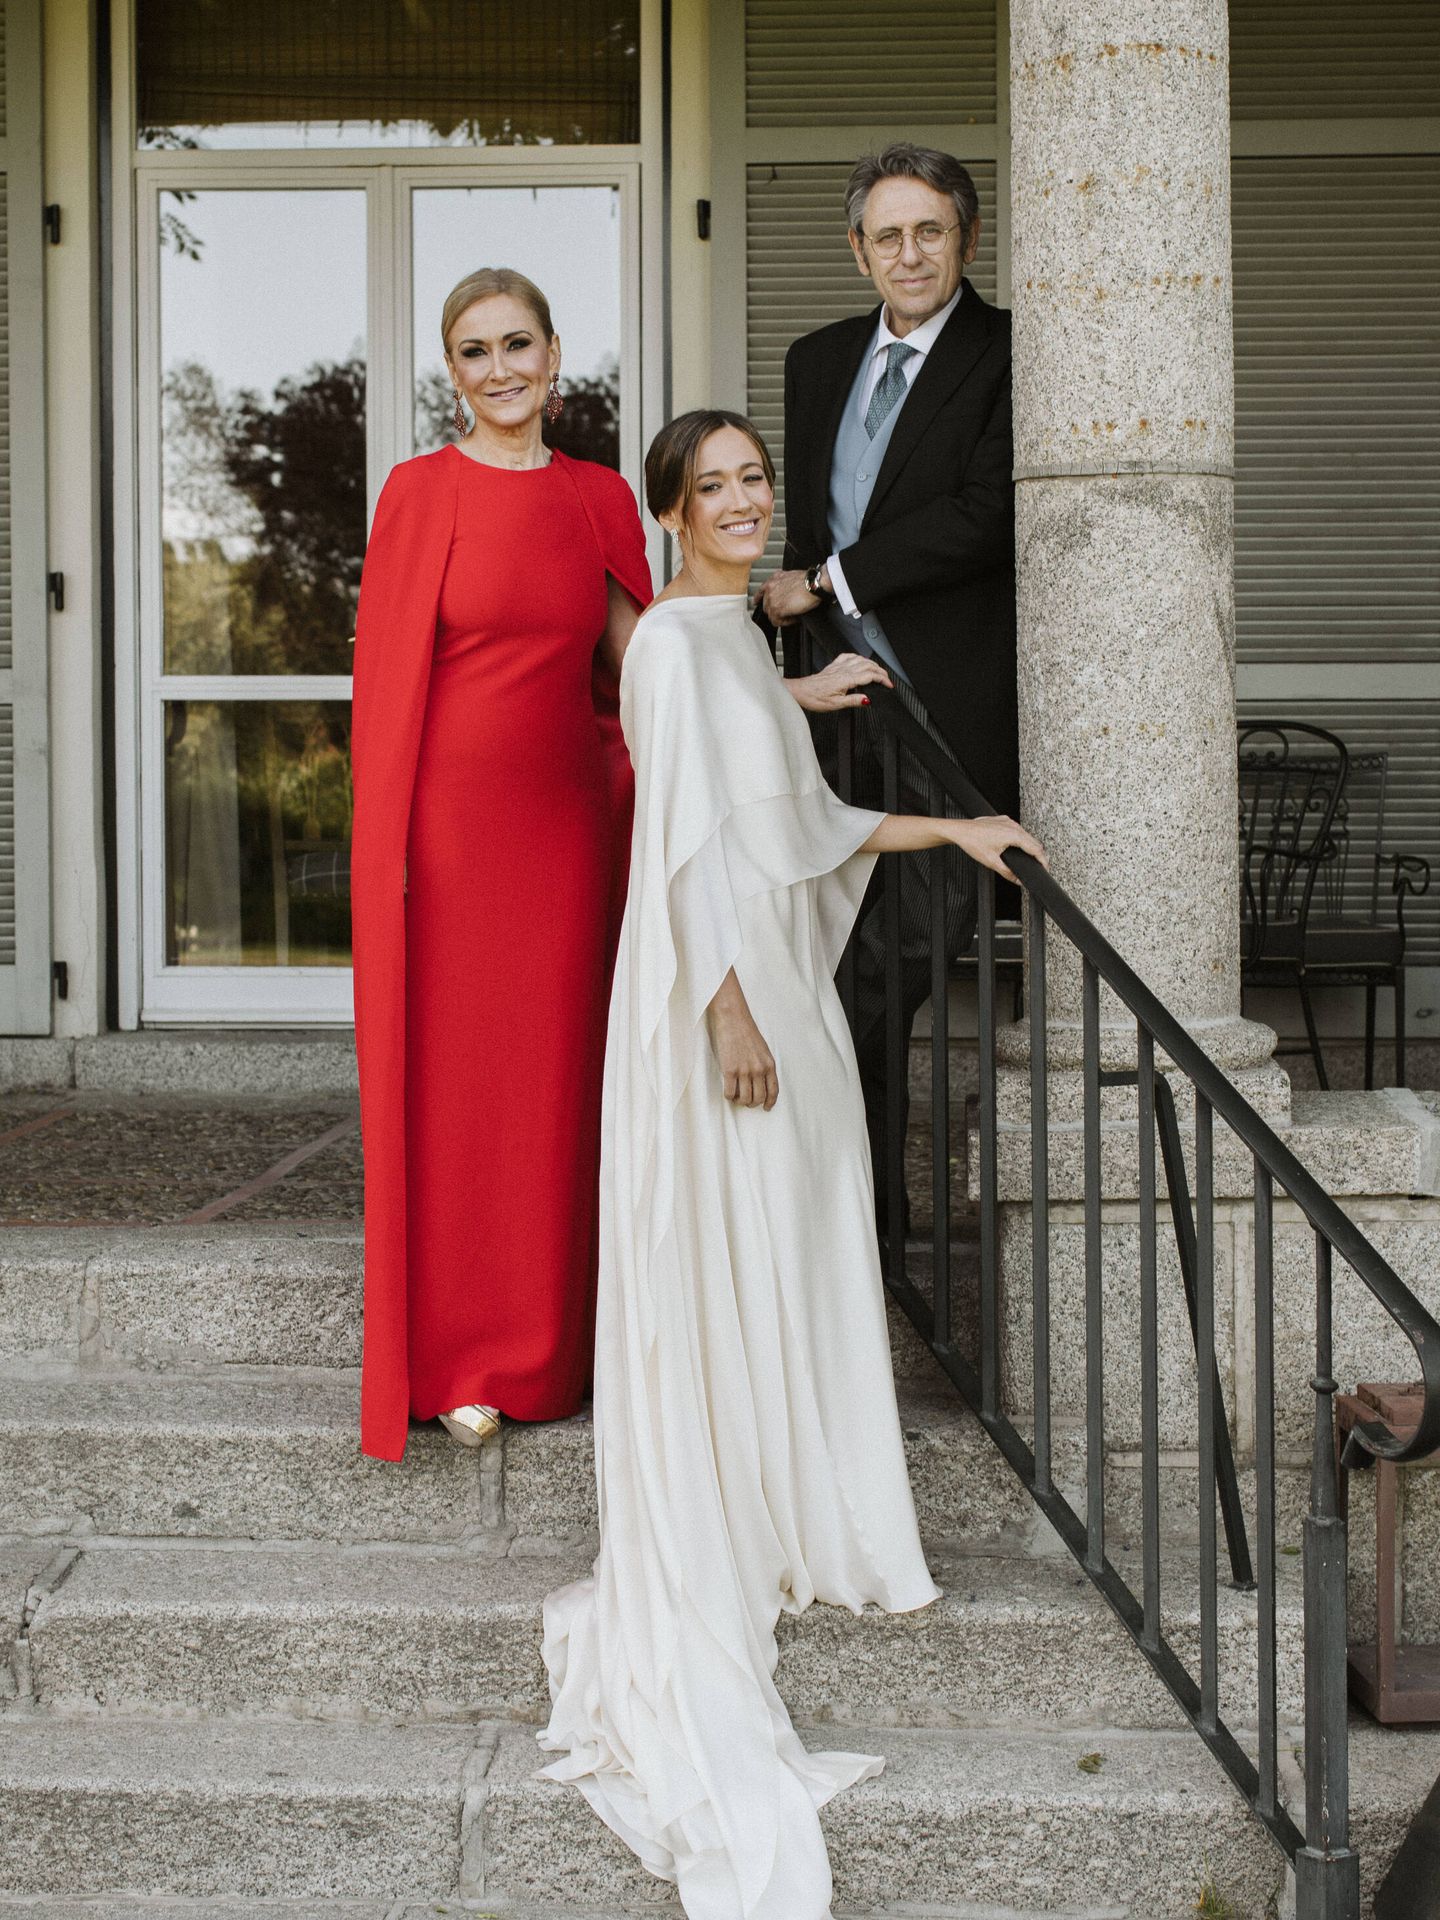 Cristina Cifuentes, emocionada, posa en la boda de su hija. (Plata.Forma)